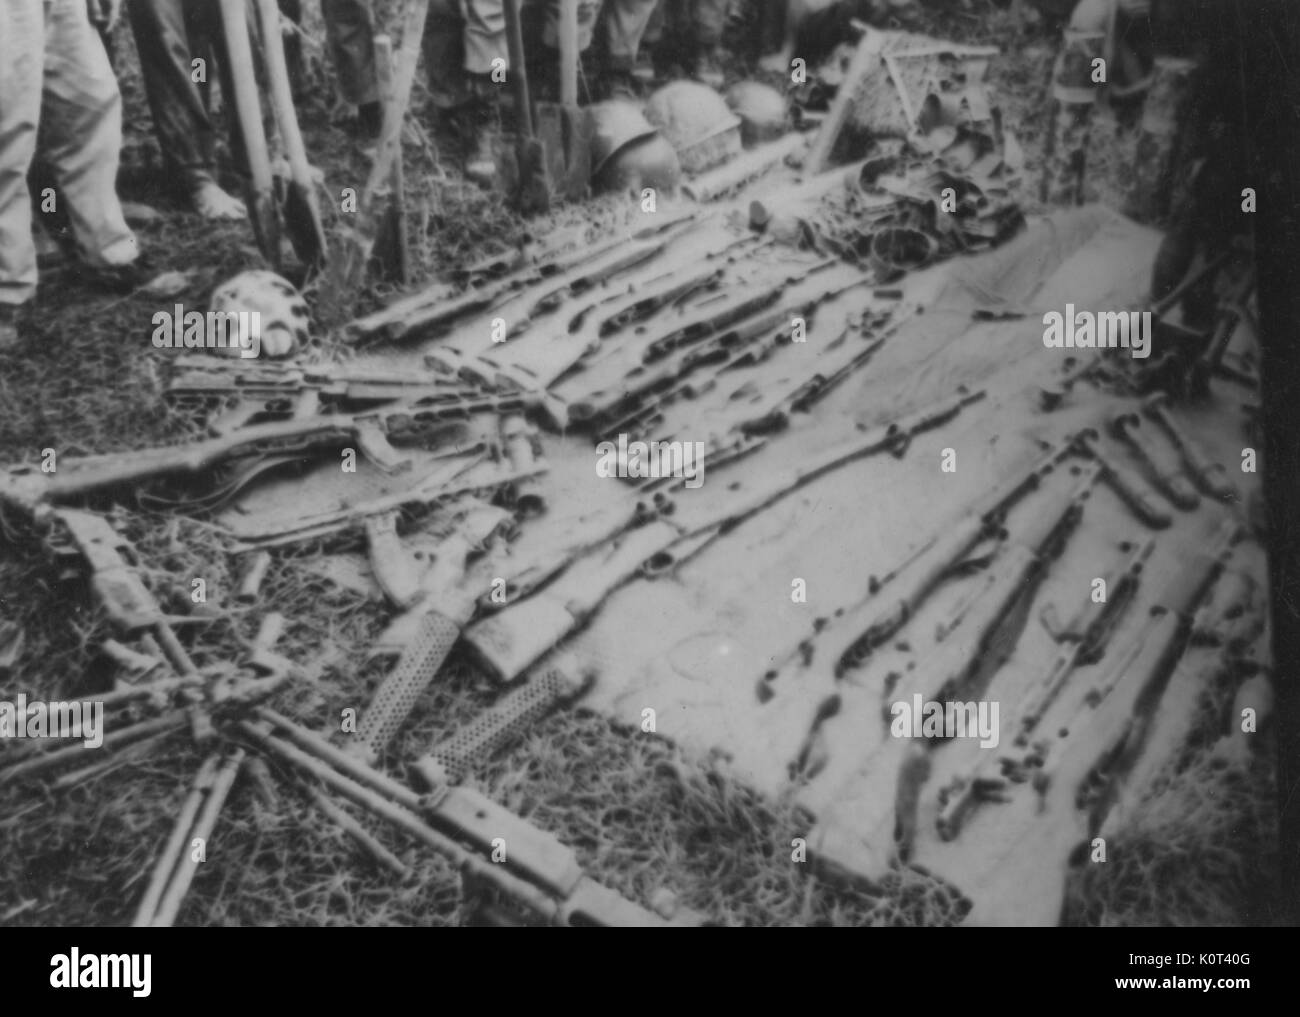 Erfasst Viet Cong Waffen, Gewehre und andere Waffen, ausgebreitet auf einer Decke, die Beine von einer Gruppe von Soldaten sichtbar herum stehen die erfassten Waffen, während des Vietnam Krieges, 1965. Stockfoto